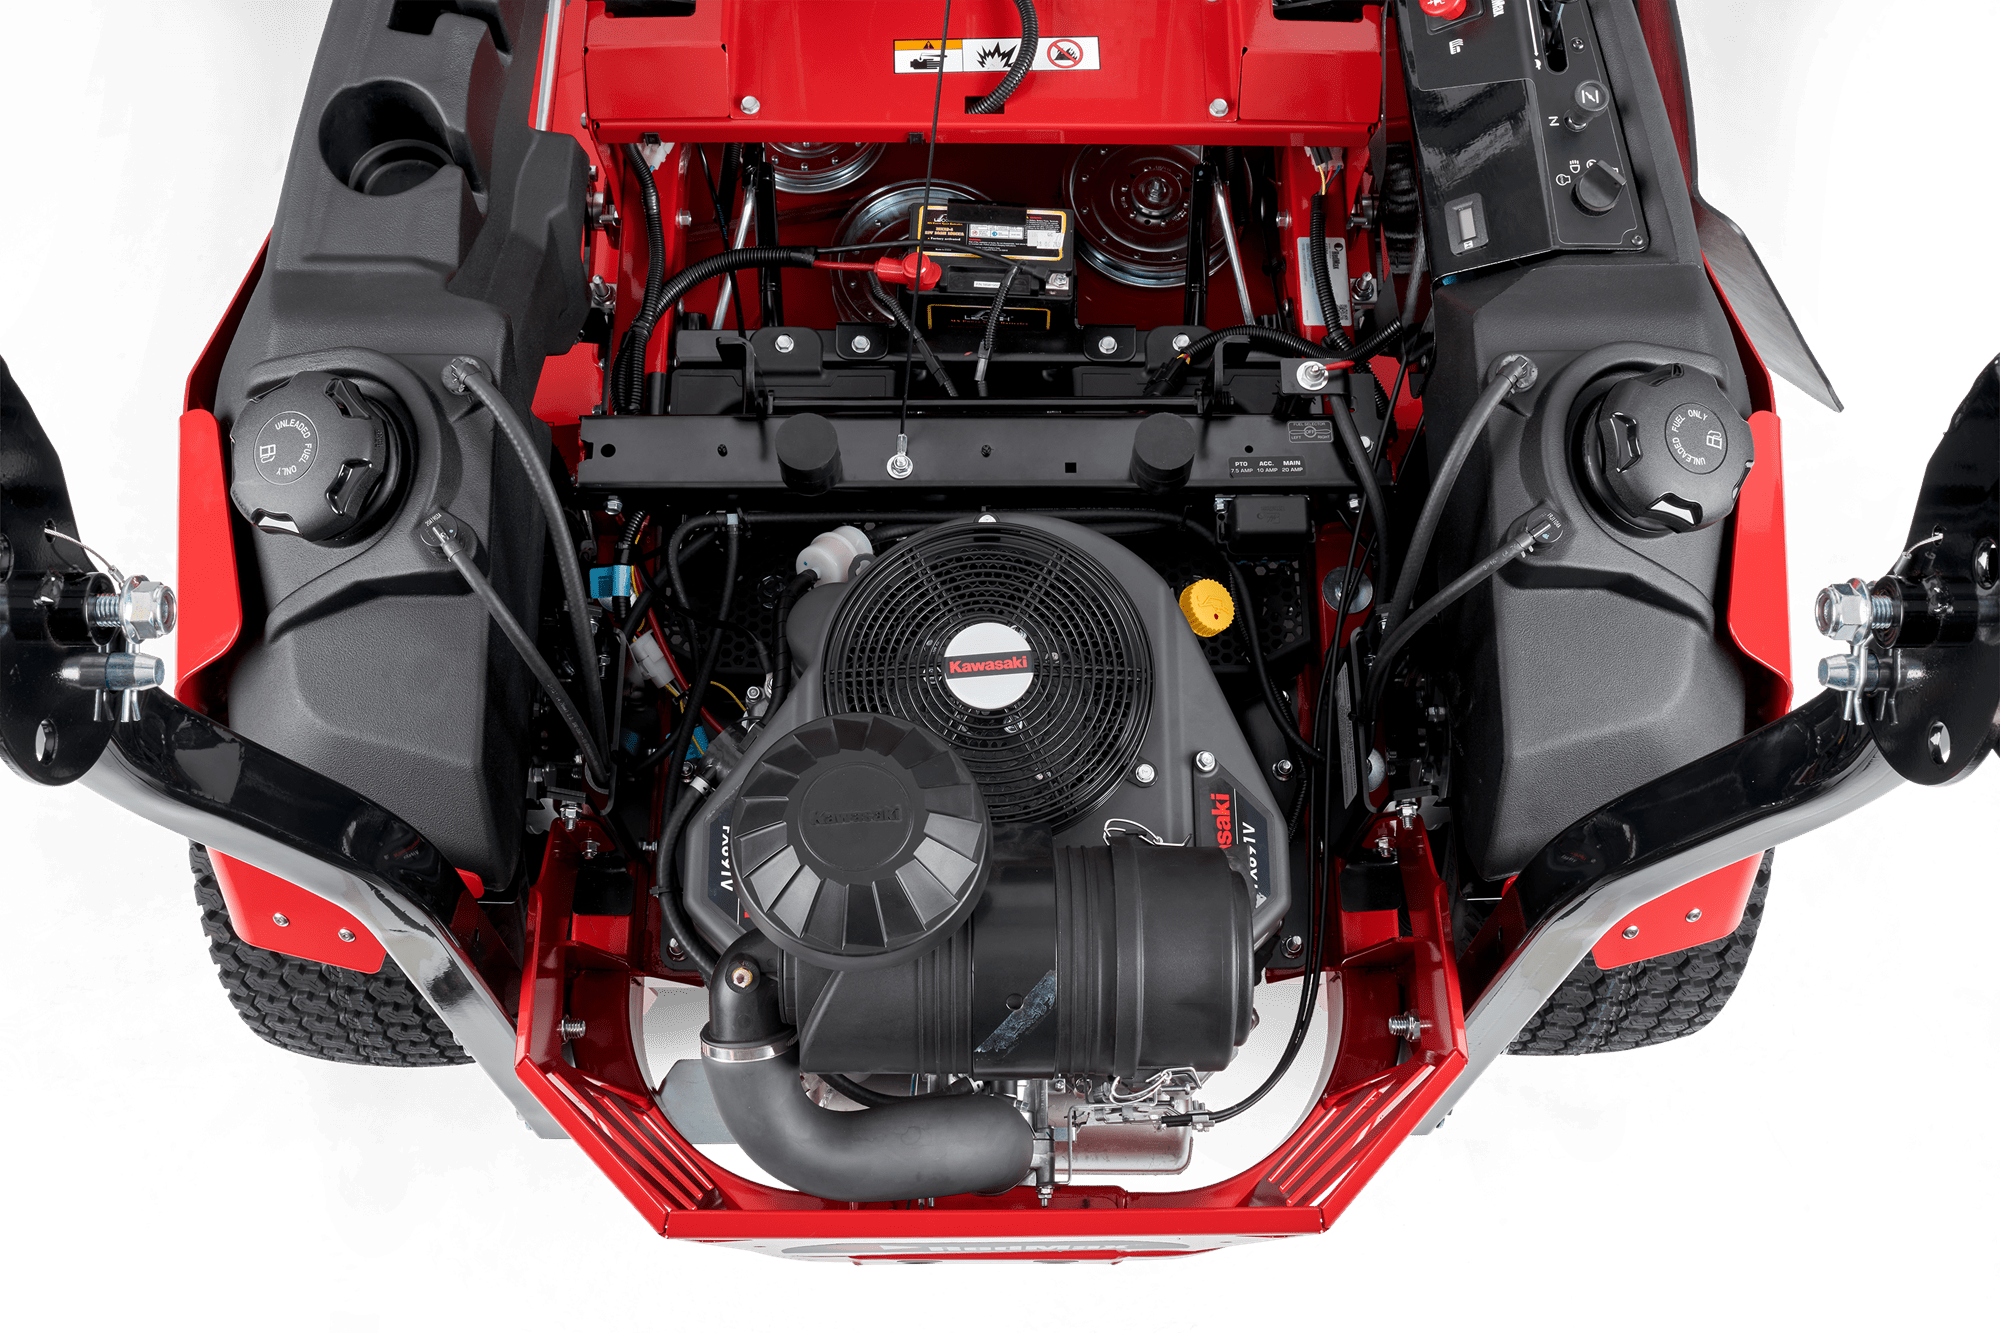 Kawasaki FX Engine Top View on RedMax CZT+